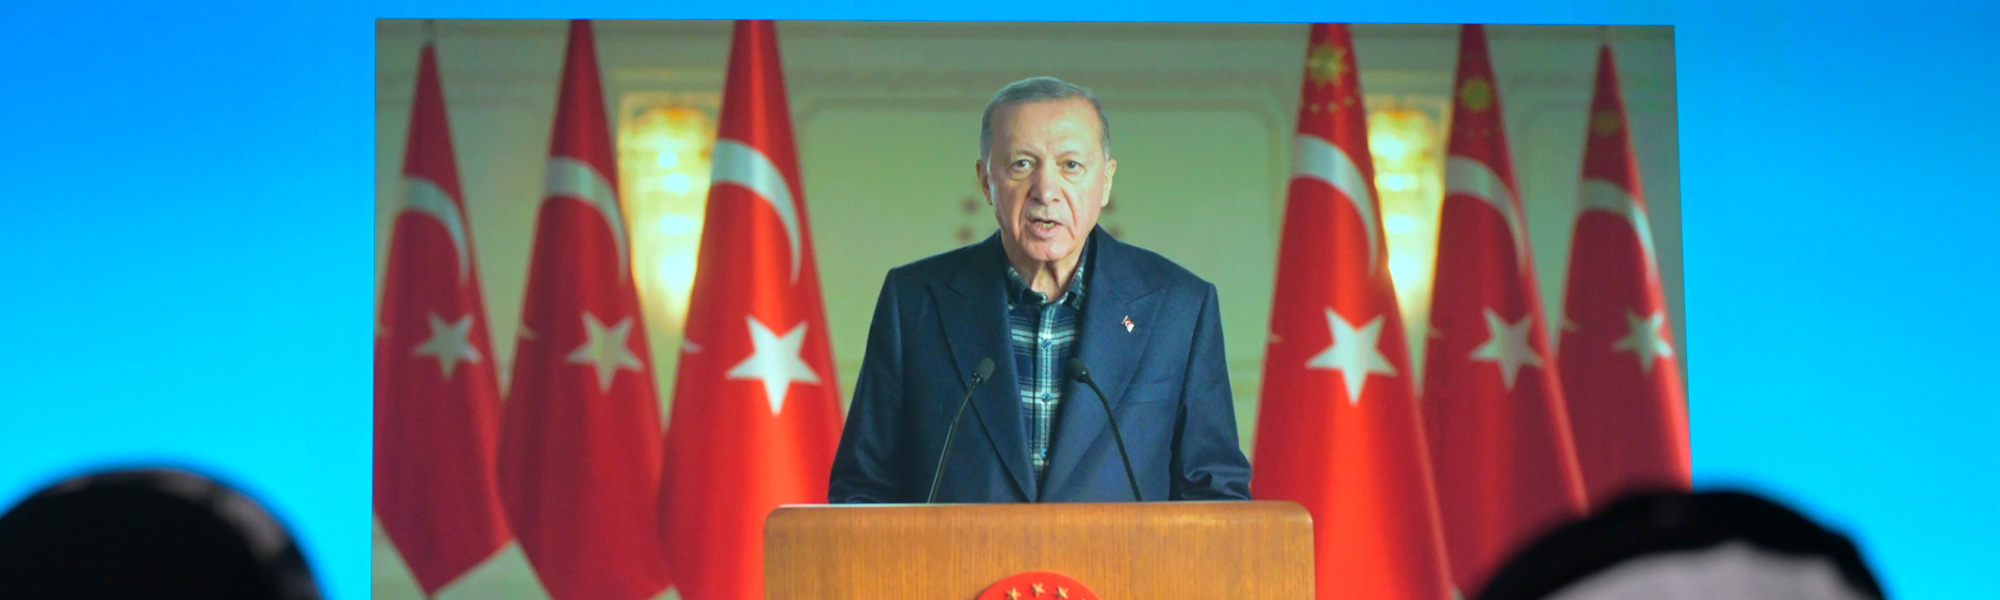 بحضور محمد بن راشد .. الرئيس التركي يوجه رسالة مسجلة إلى القمة العالمية للحكومات